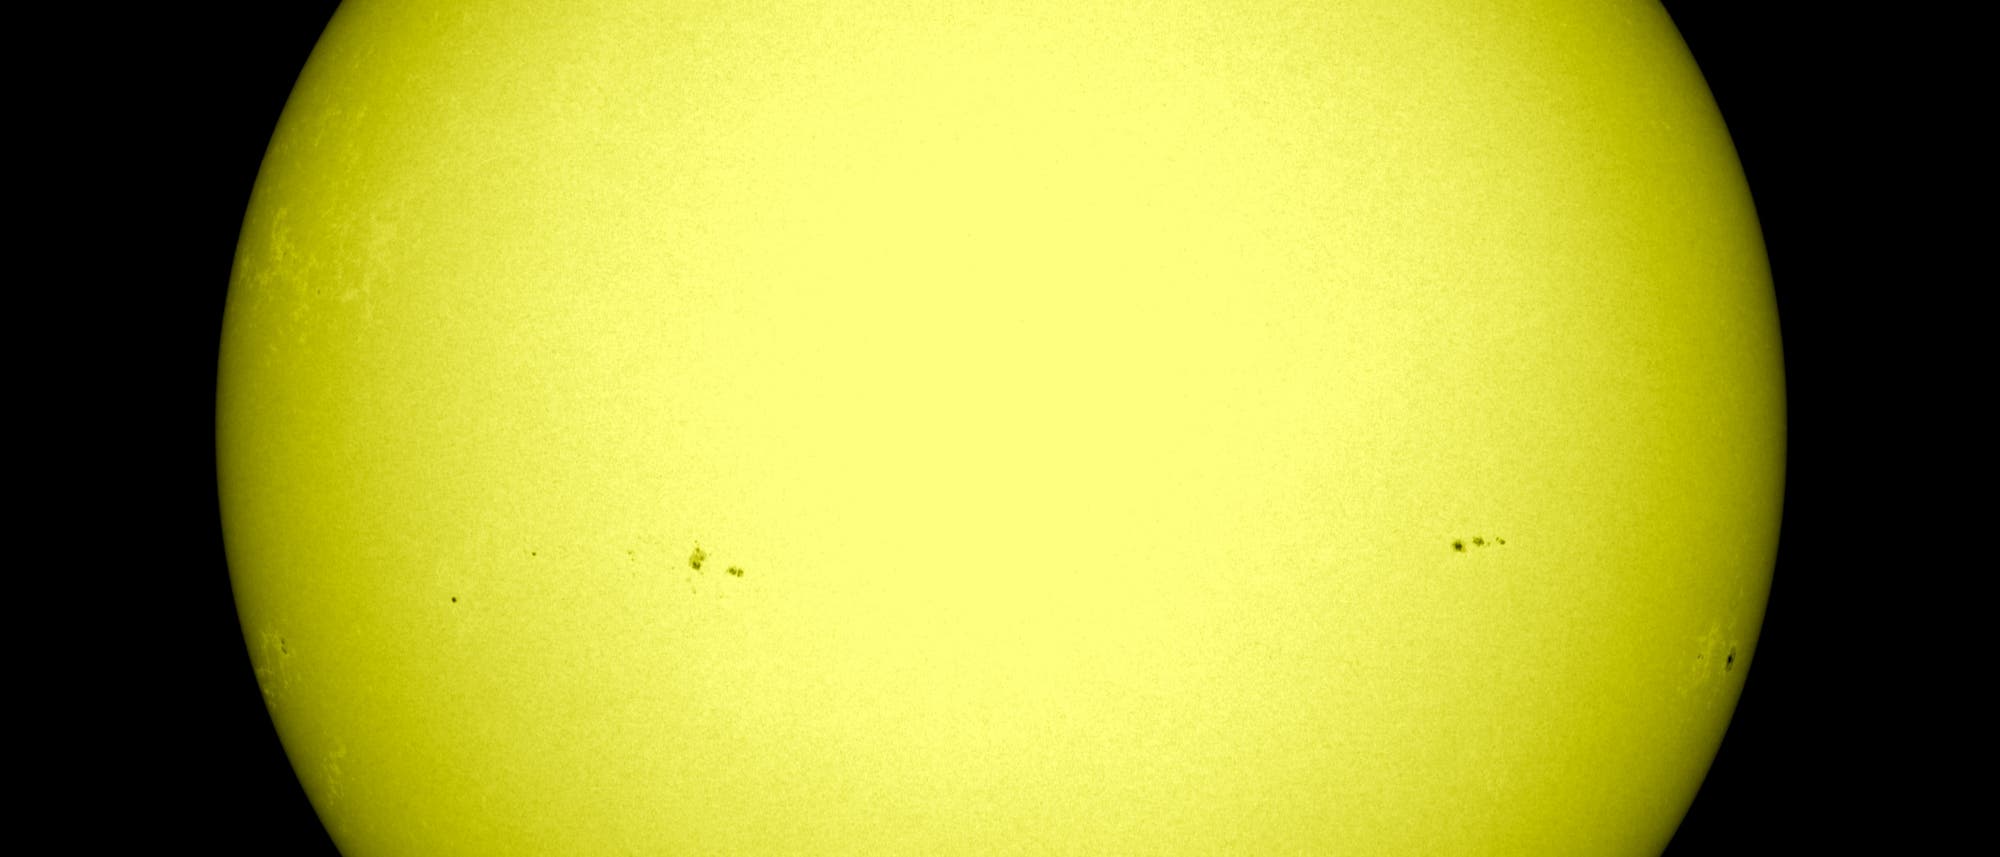 Die Sonne am 4. März 2013 im sichtbaren Licht